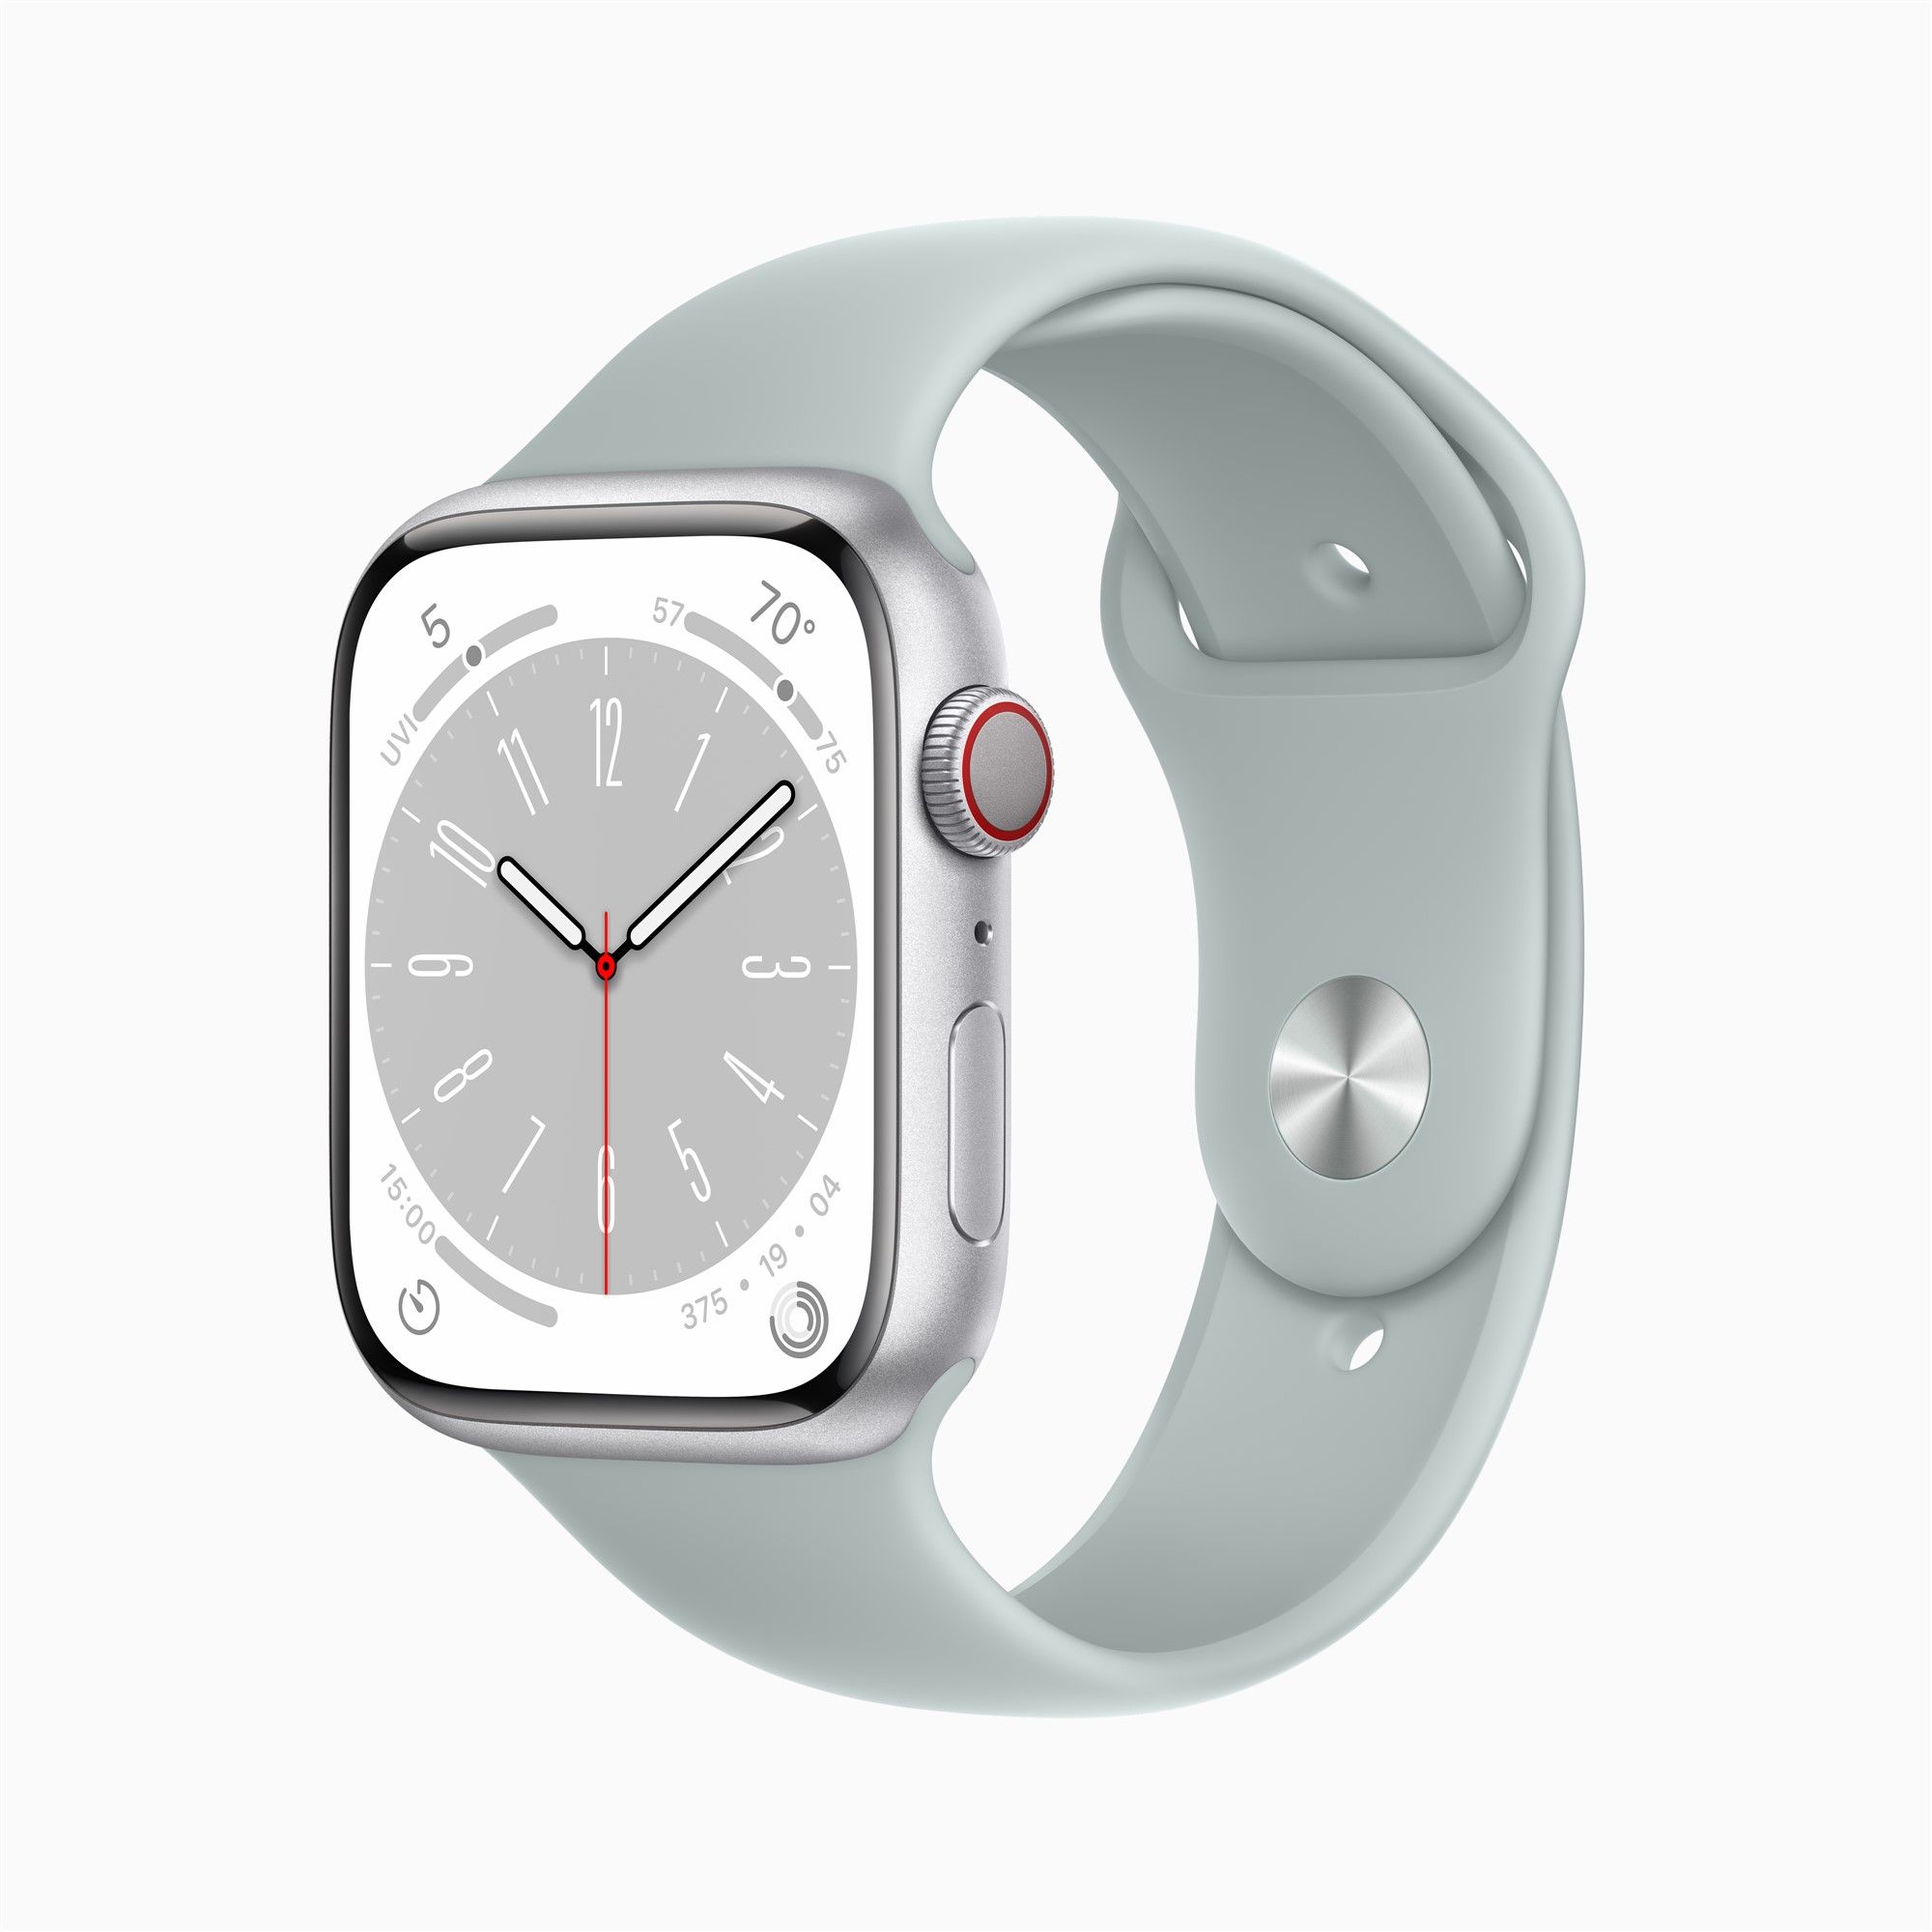 Ultra-Version, in Apple 2. Generation Airpods Watch erscheint in Pro